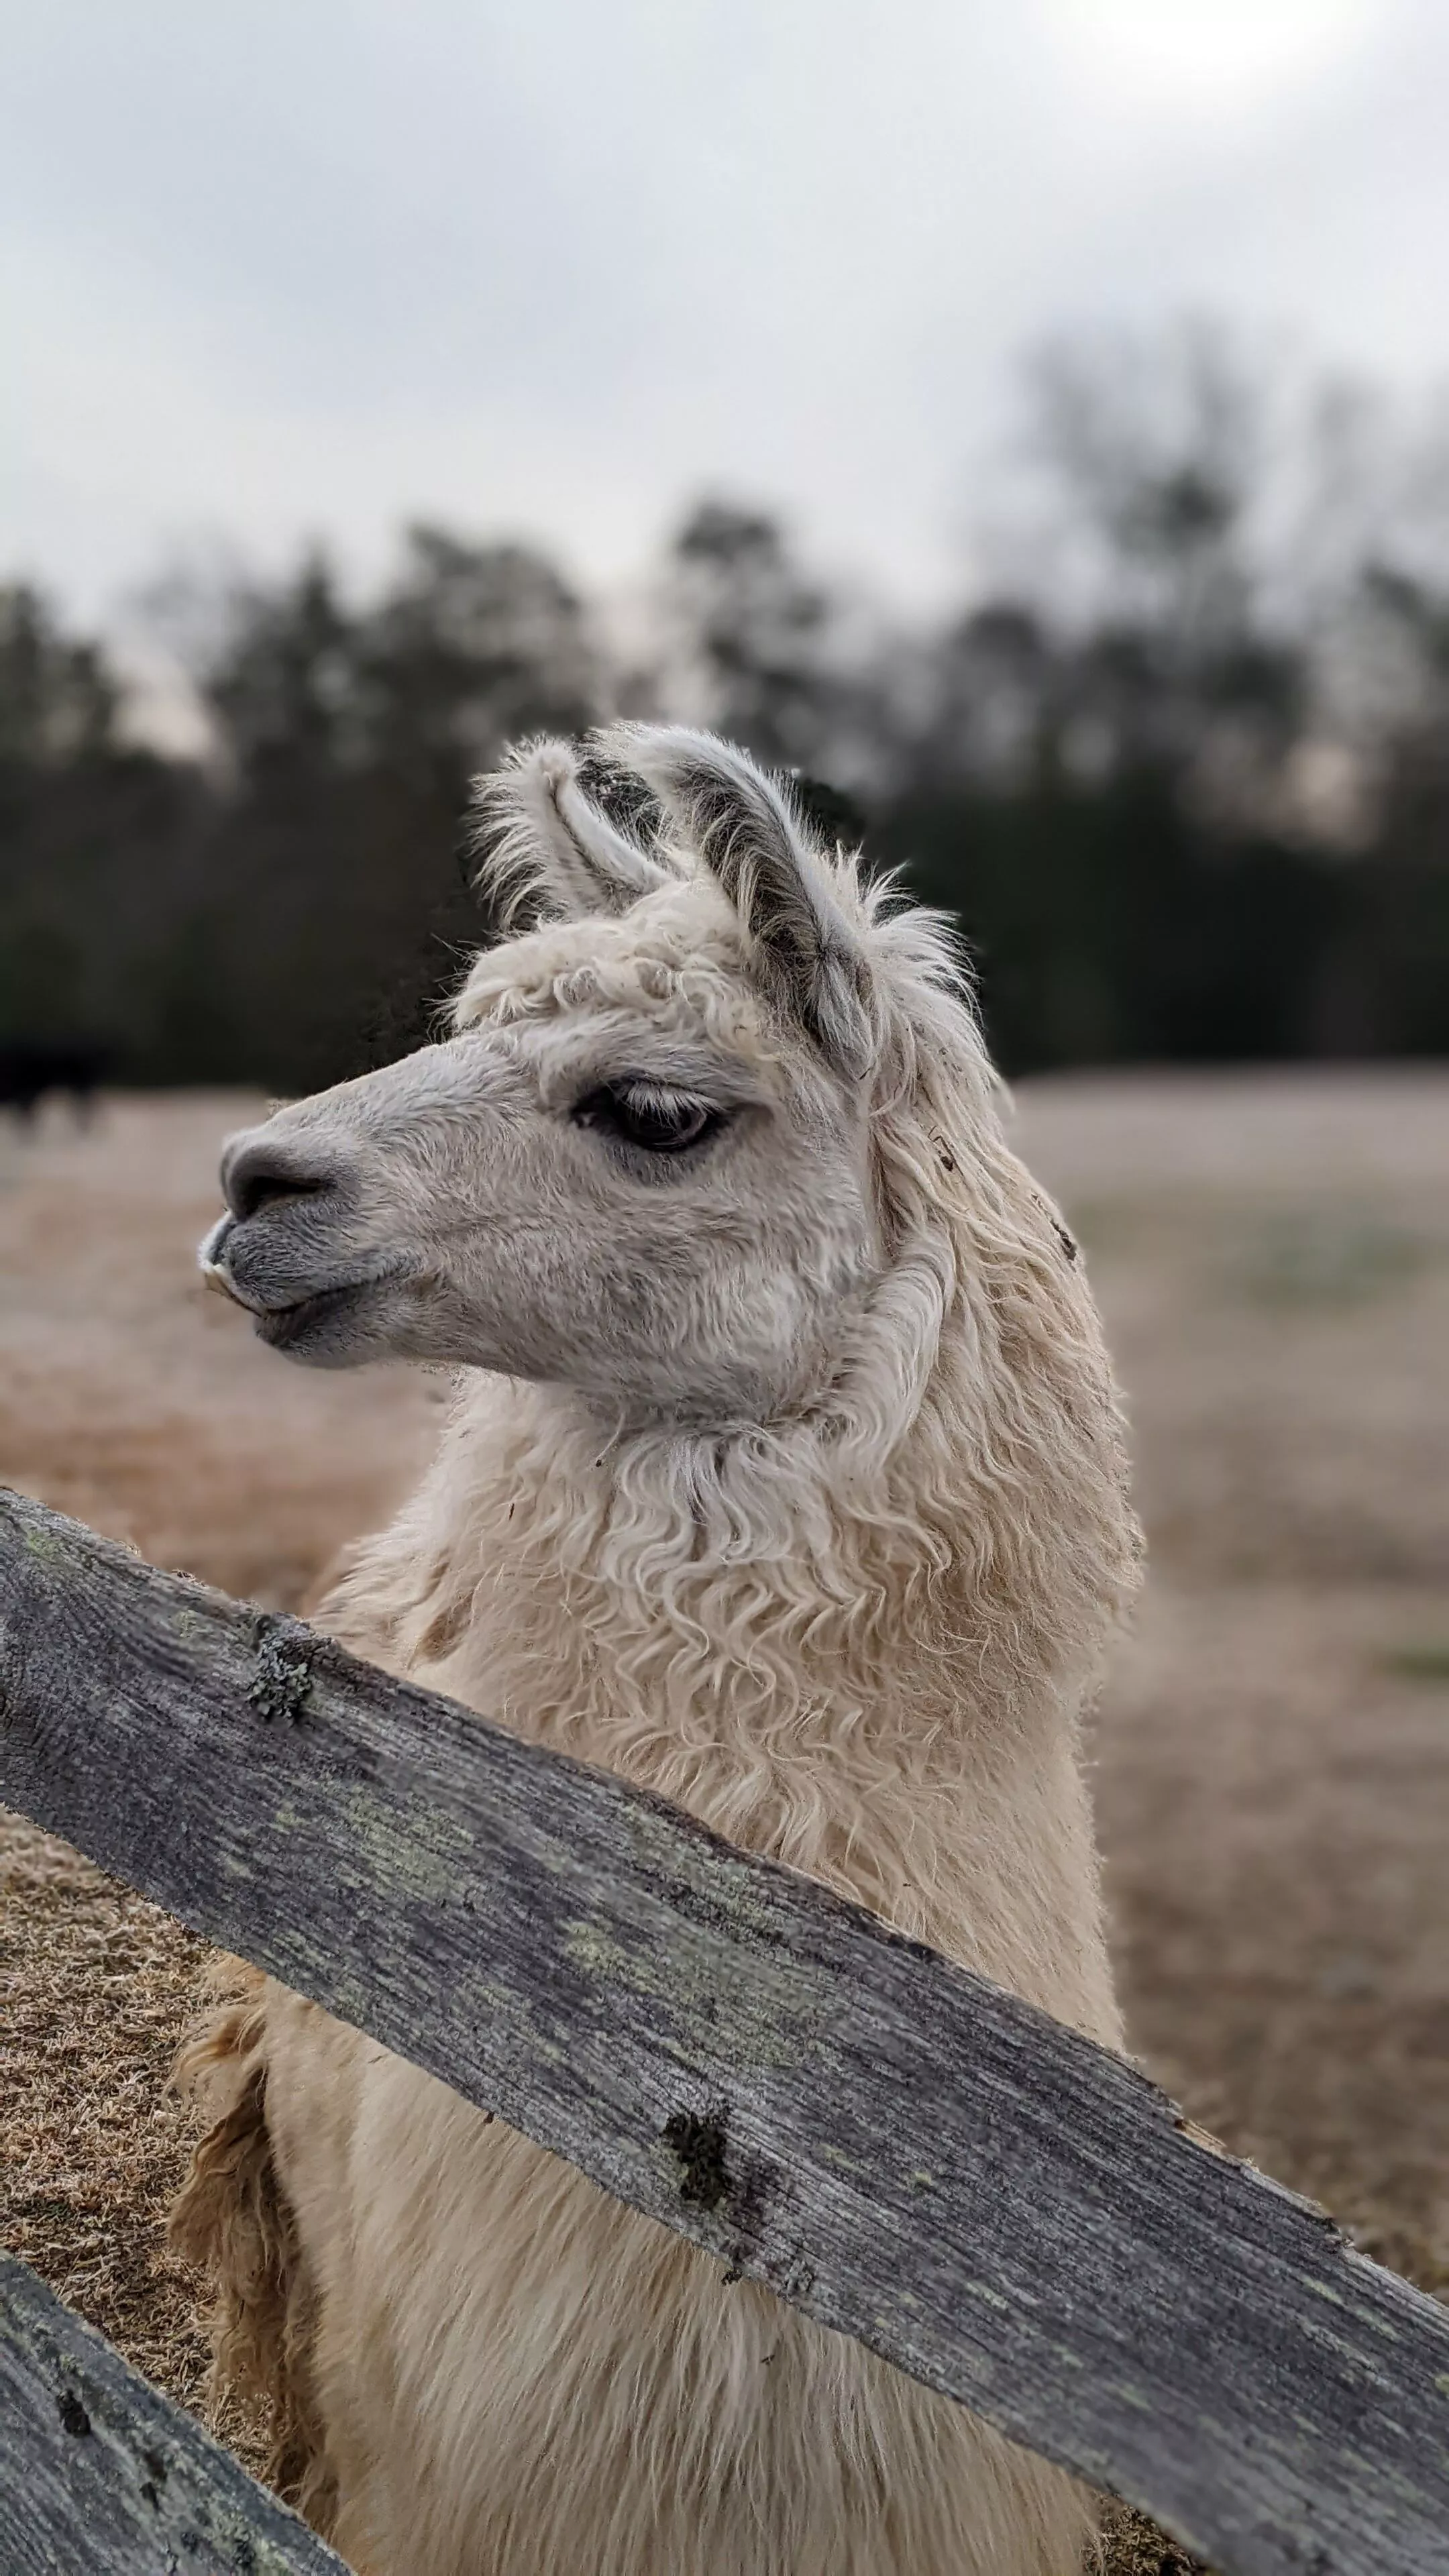 A portrait image of a llama named Max